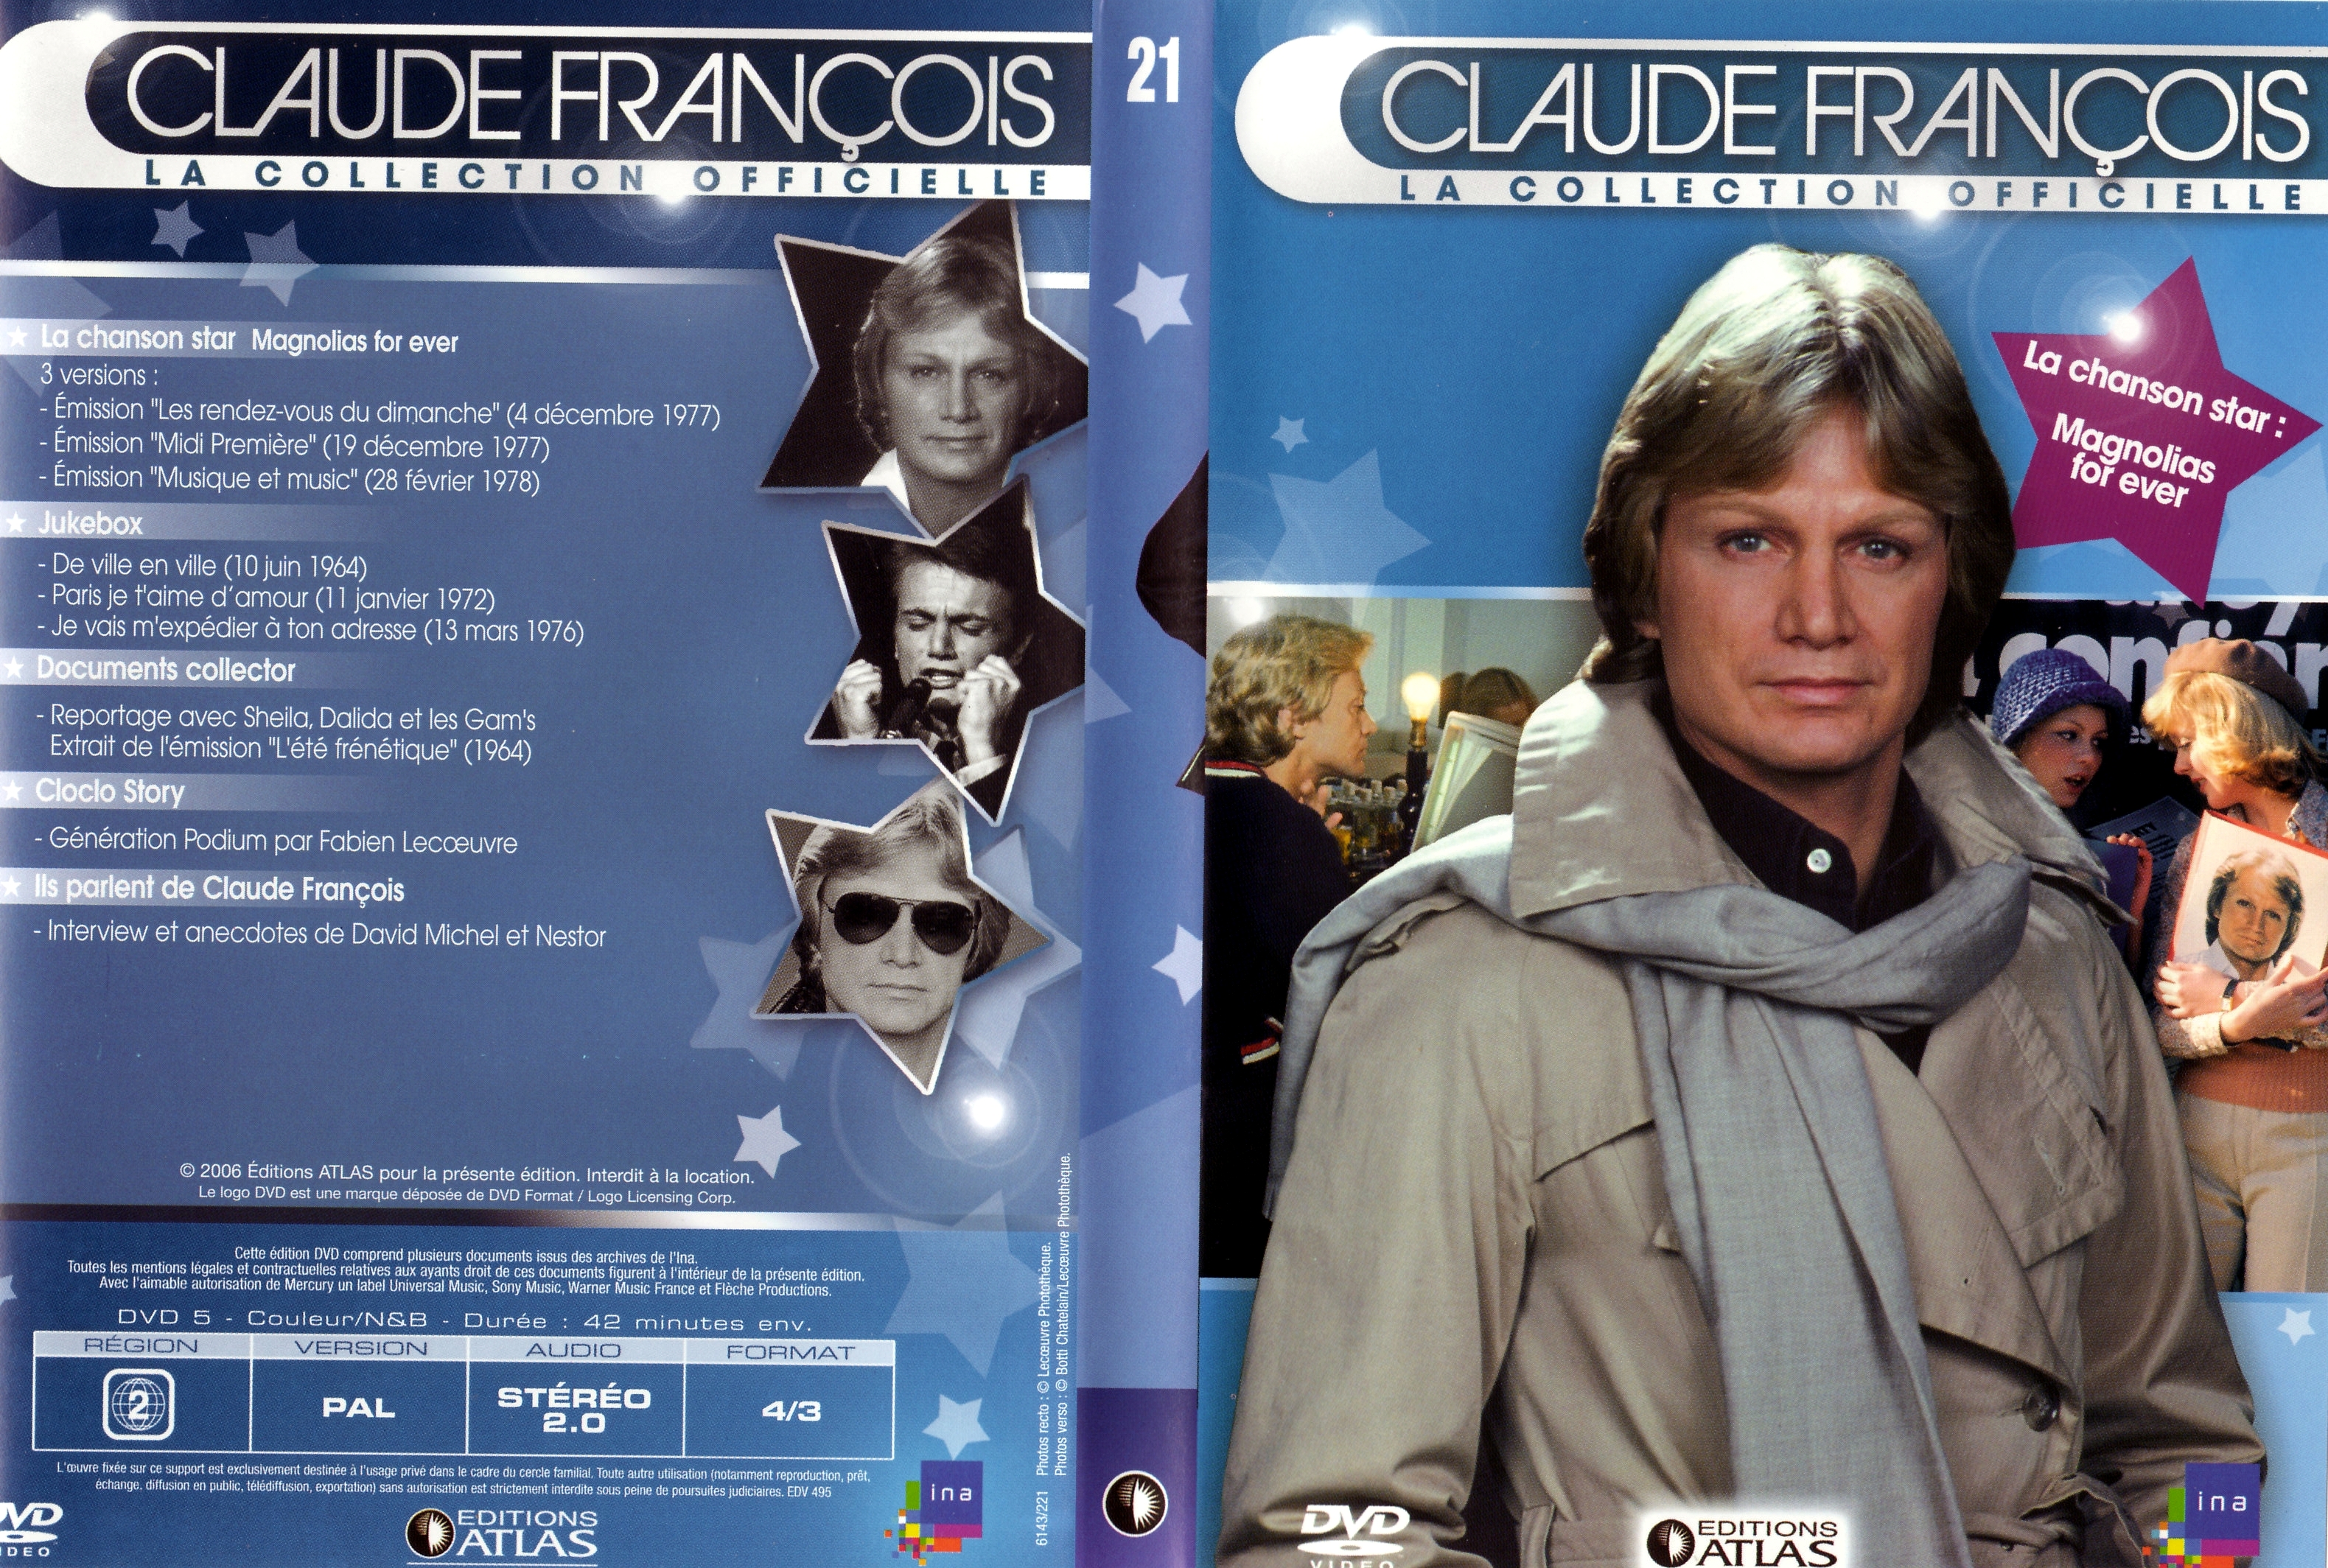 Jaquette DVD Claude Francois la collection officielle vol 21